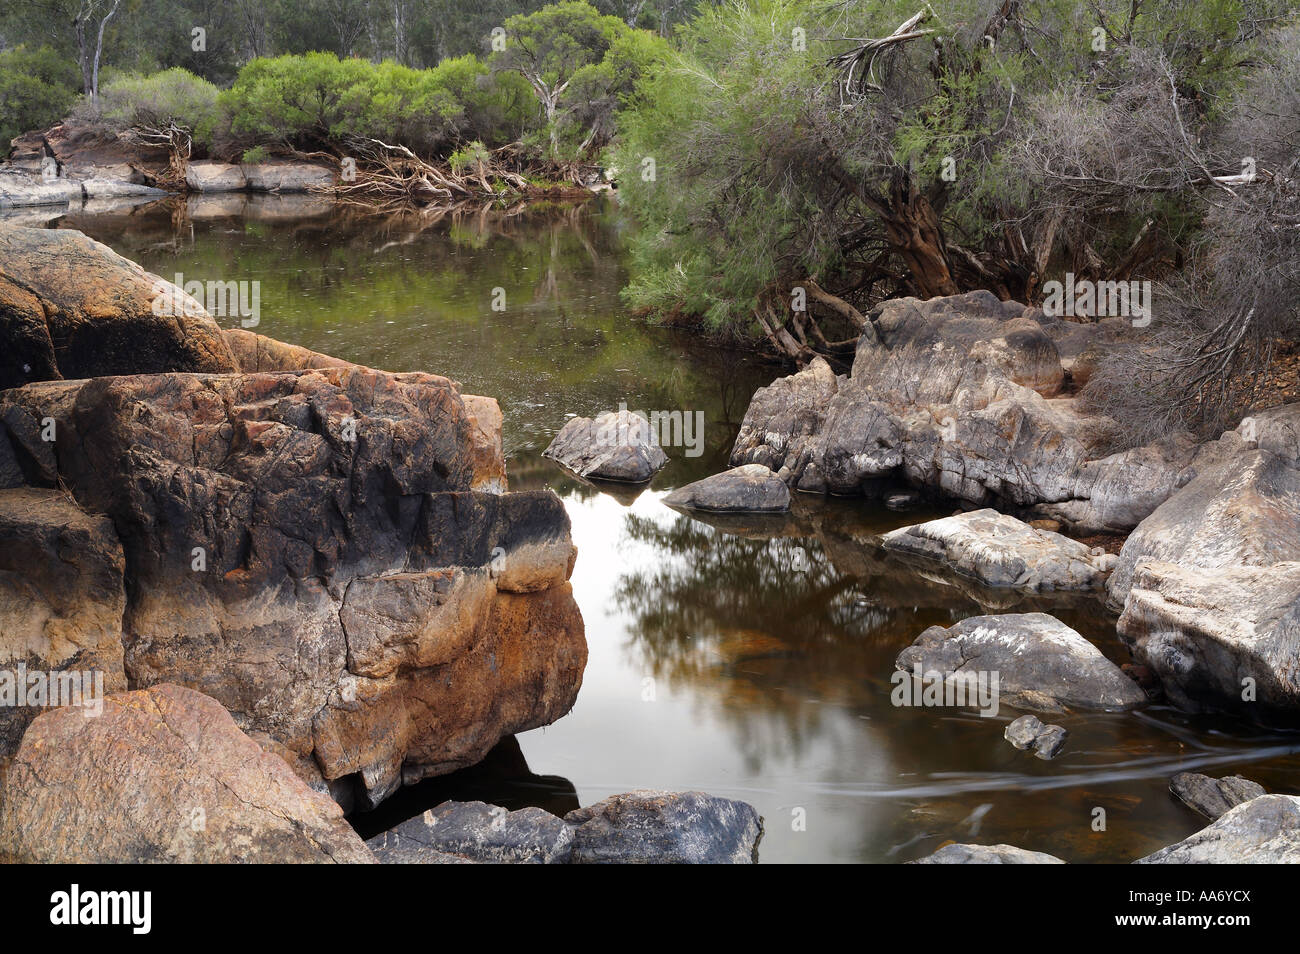 rocky outback